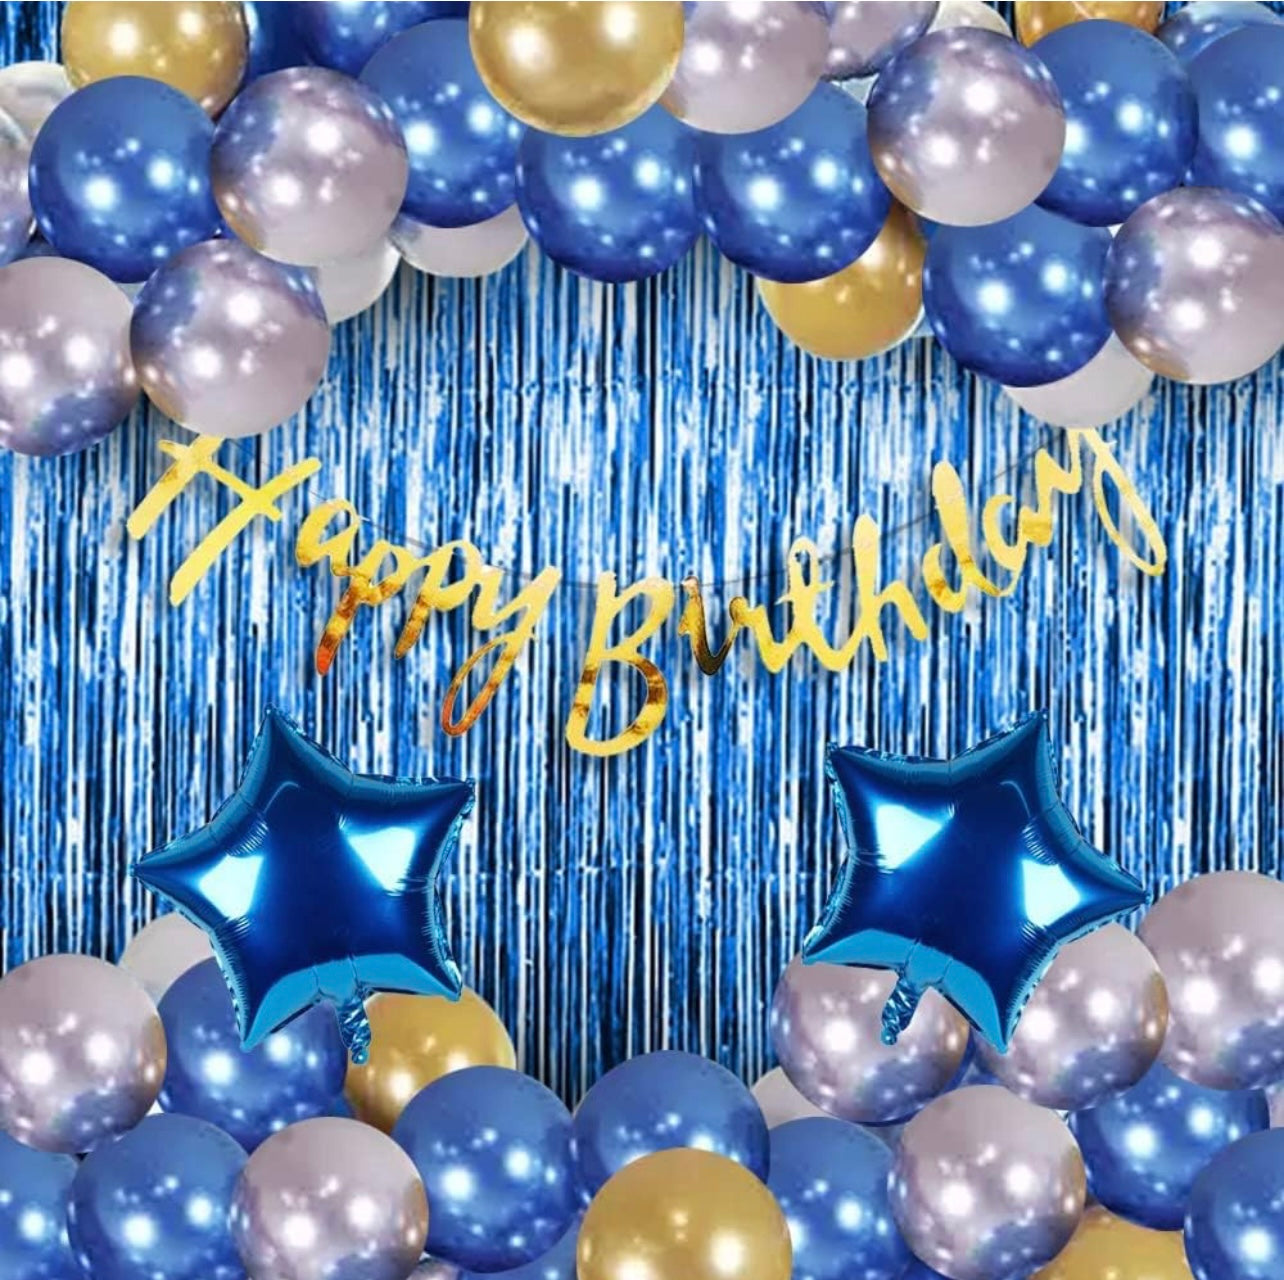 Surat Decoration Foil, Latex, Paper Banner Blue Birthday Decoration Items - 41 Pcs Birthday Decorations Kit|Happy Birthday Decorations For Boys/Husband|Blue Balloons For Birthday Decorations